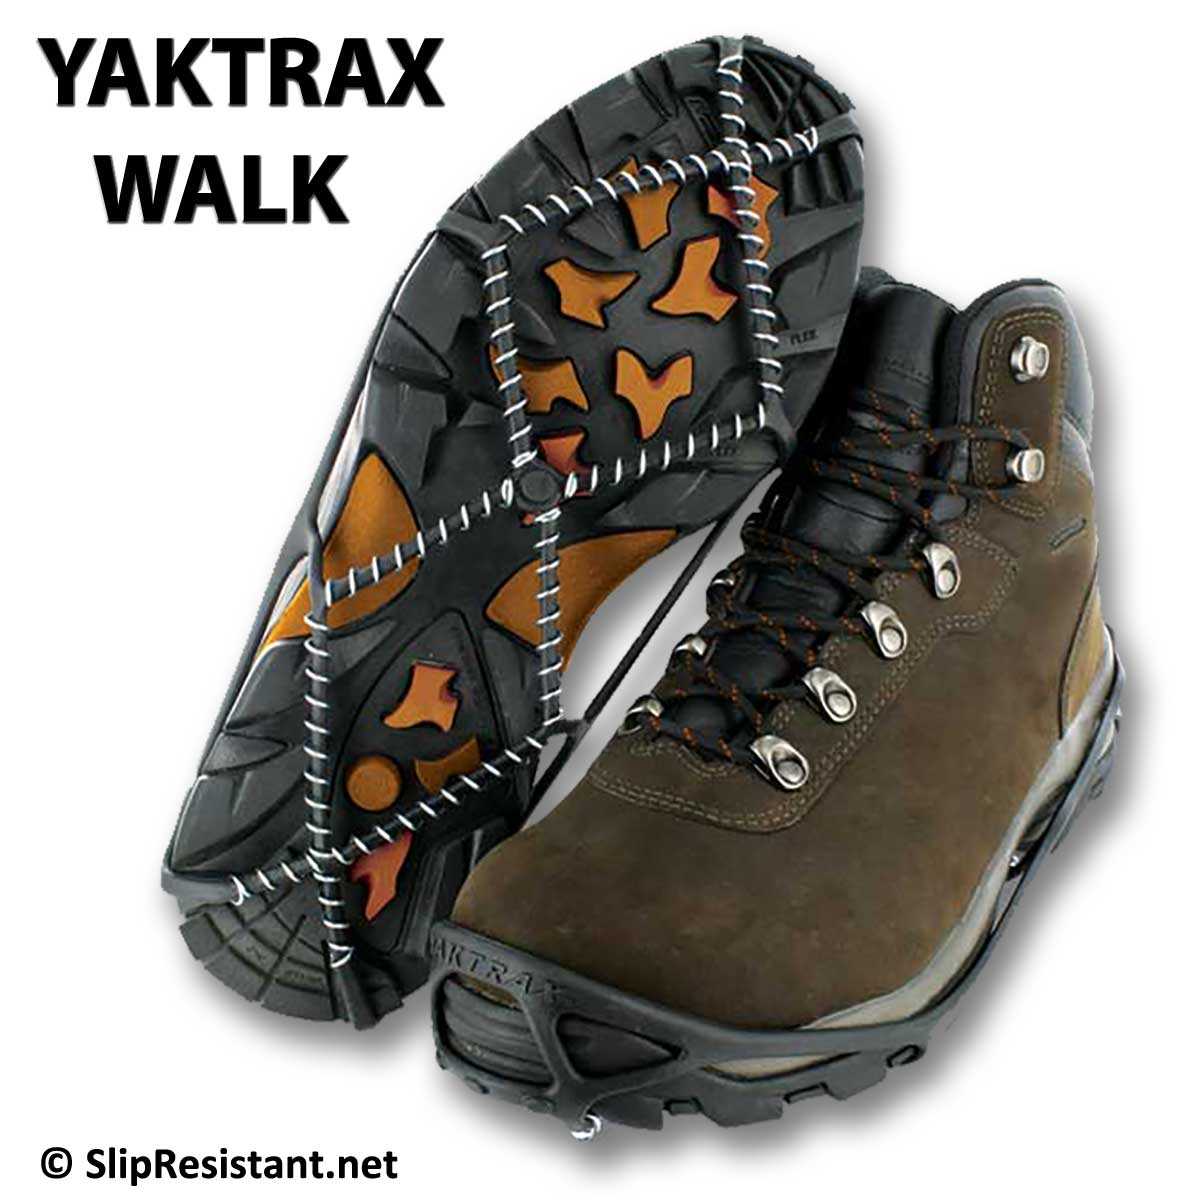 Schnee Trax YAKTRAX S-M x1 siehe Foto für Schuhgröße 